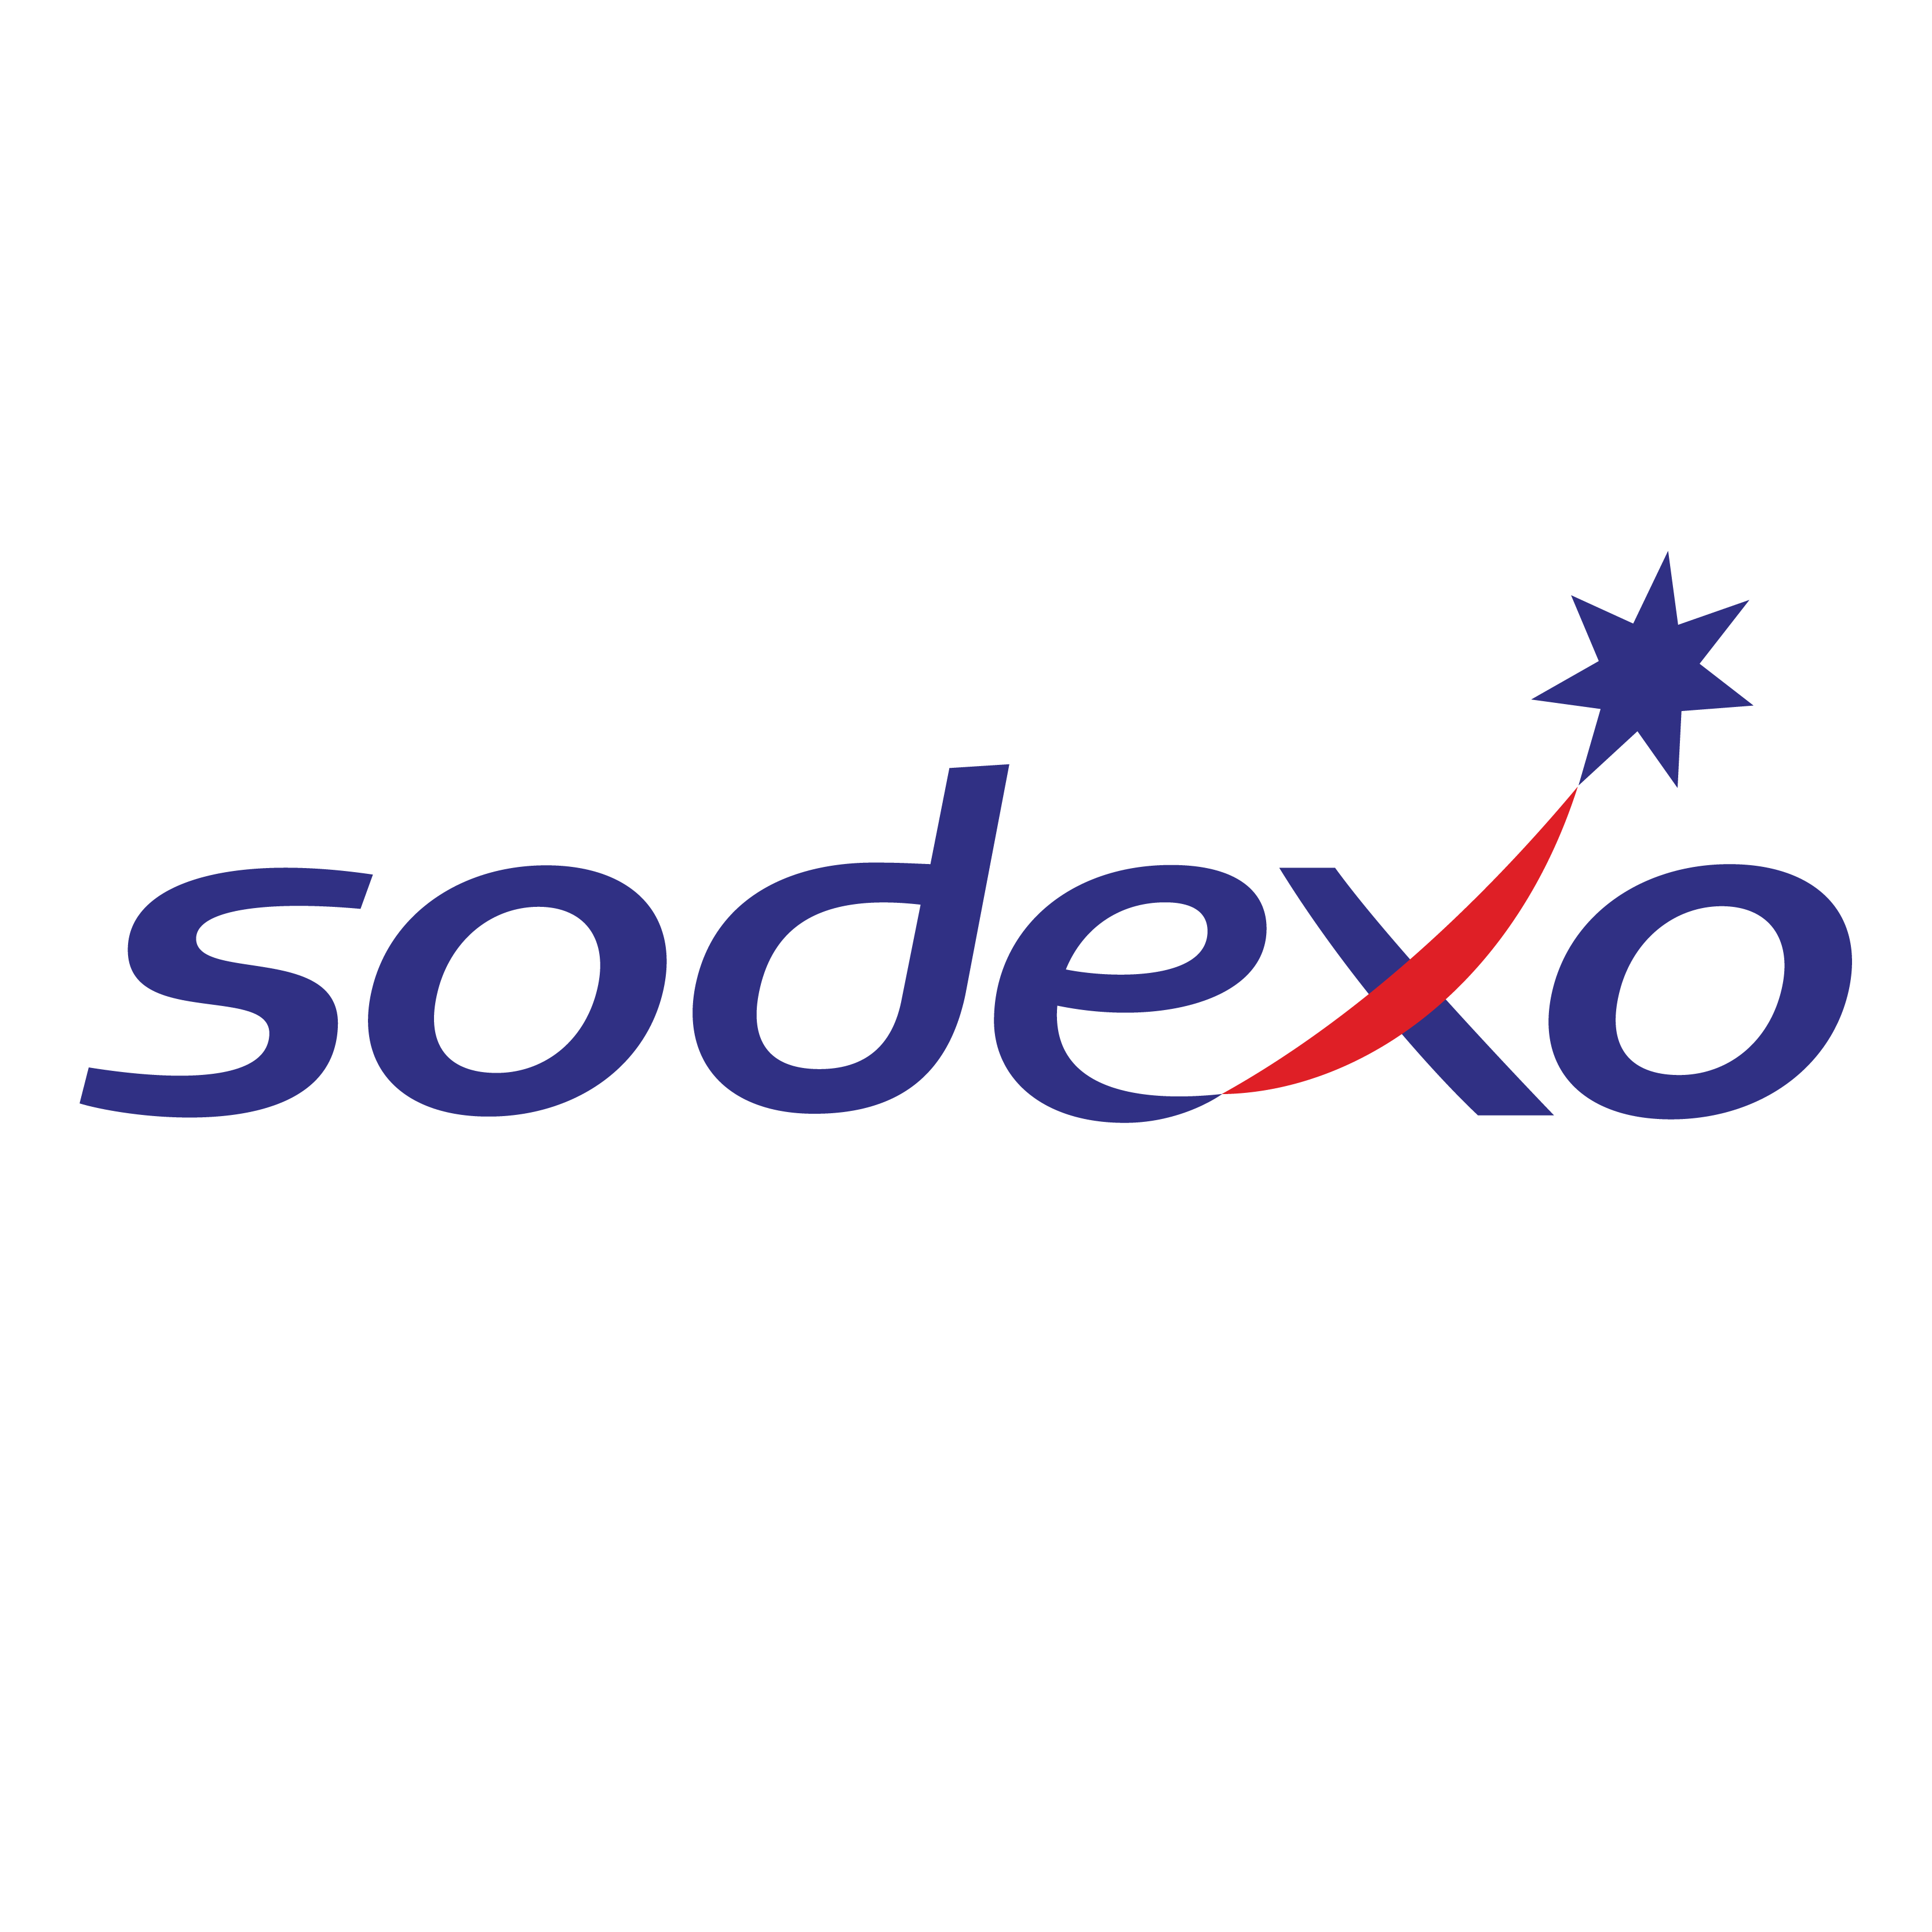 L'agenzia Cactix di Dubai, Dubai, United Arab Emirates ha aiutato Sodexo a far crescere il suo business con la SEO e il digital marketing